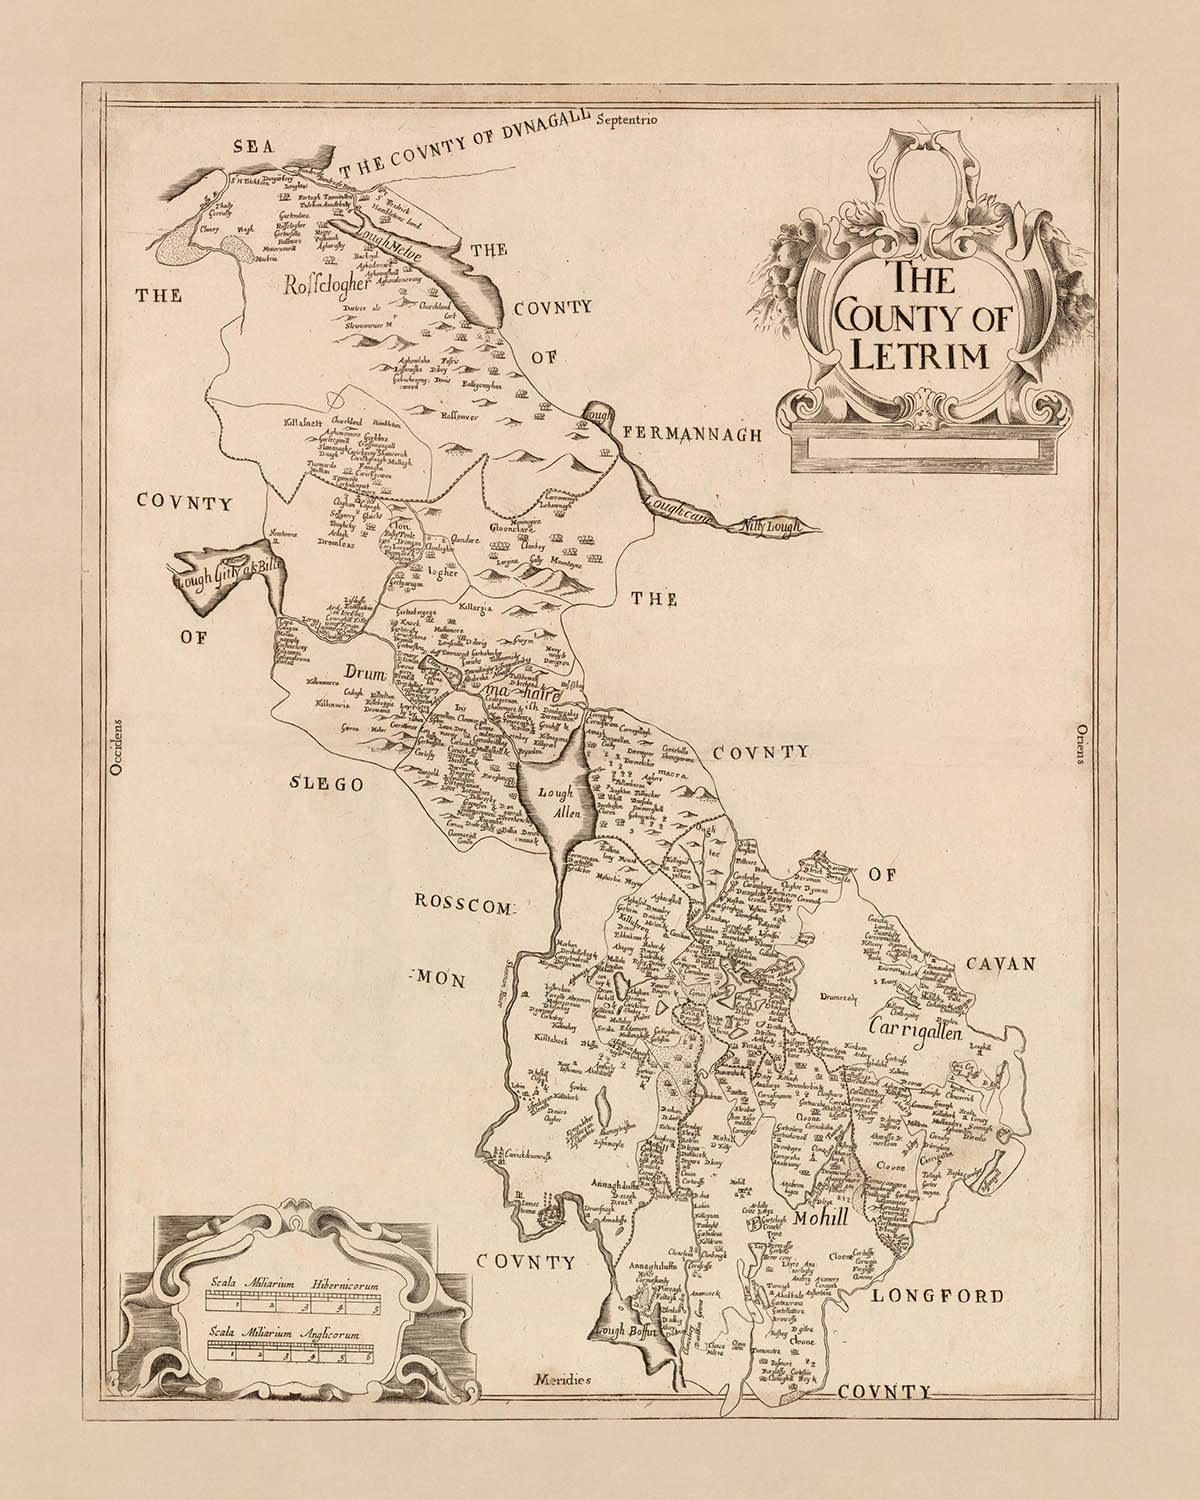 Mapa antiguo del condado de Leitrim por Petty, 1685: Carrick-on-Shannon, Jamestown, Leitrim, Down Survey, detallado político y físico